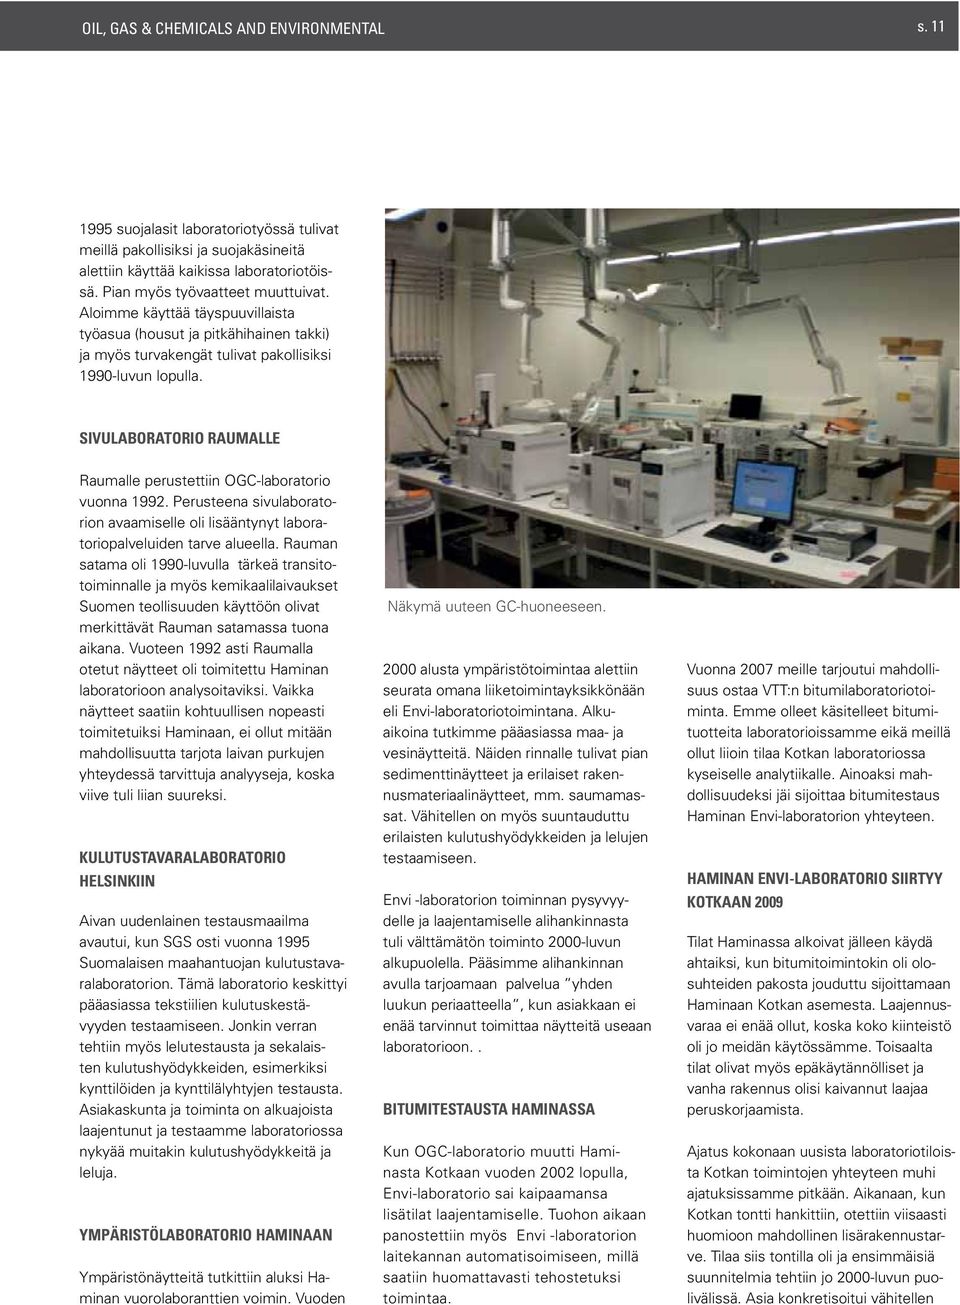 Sivulaboratorio Raumalle Raumalle perustettiin OGC-laboratorio vuonna 1992. Perusteena sivulaboratorion avaamiselle oli lisääntynyt laboratoriopalveluiden tarve alueella.